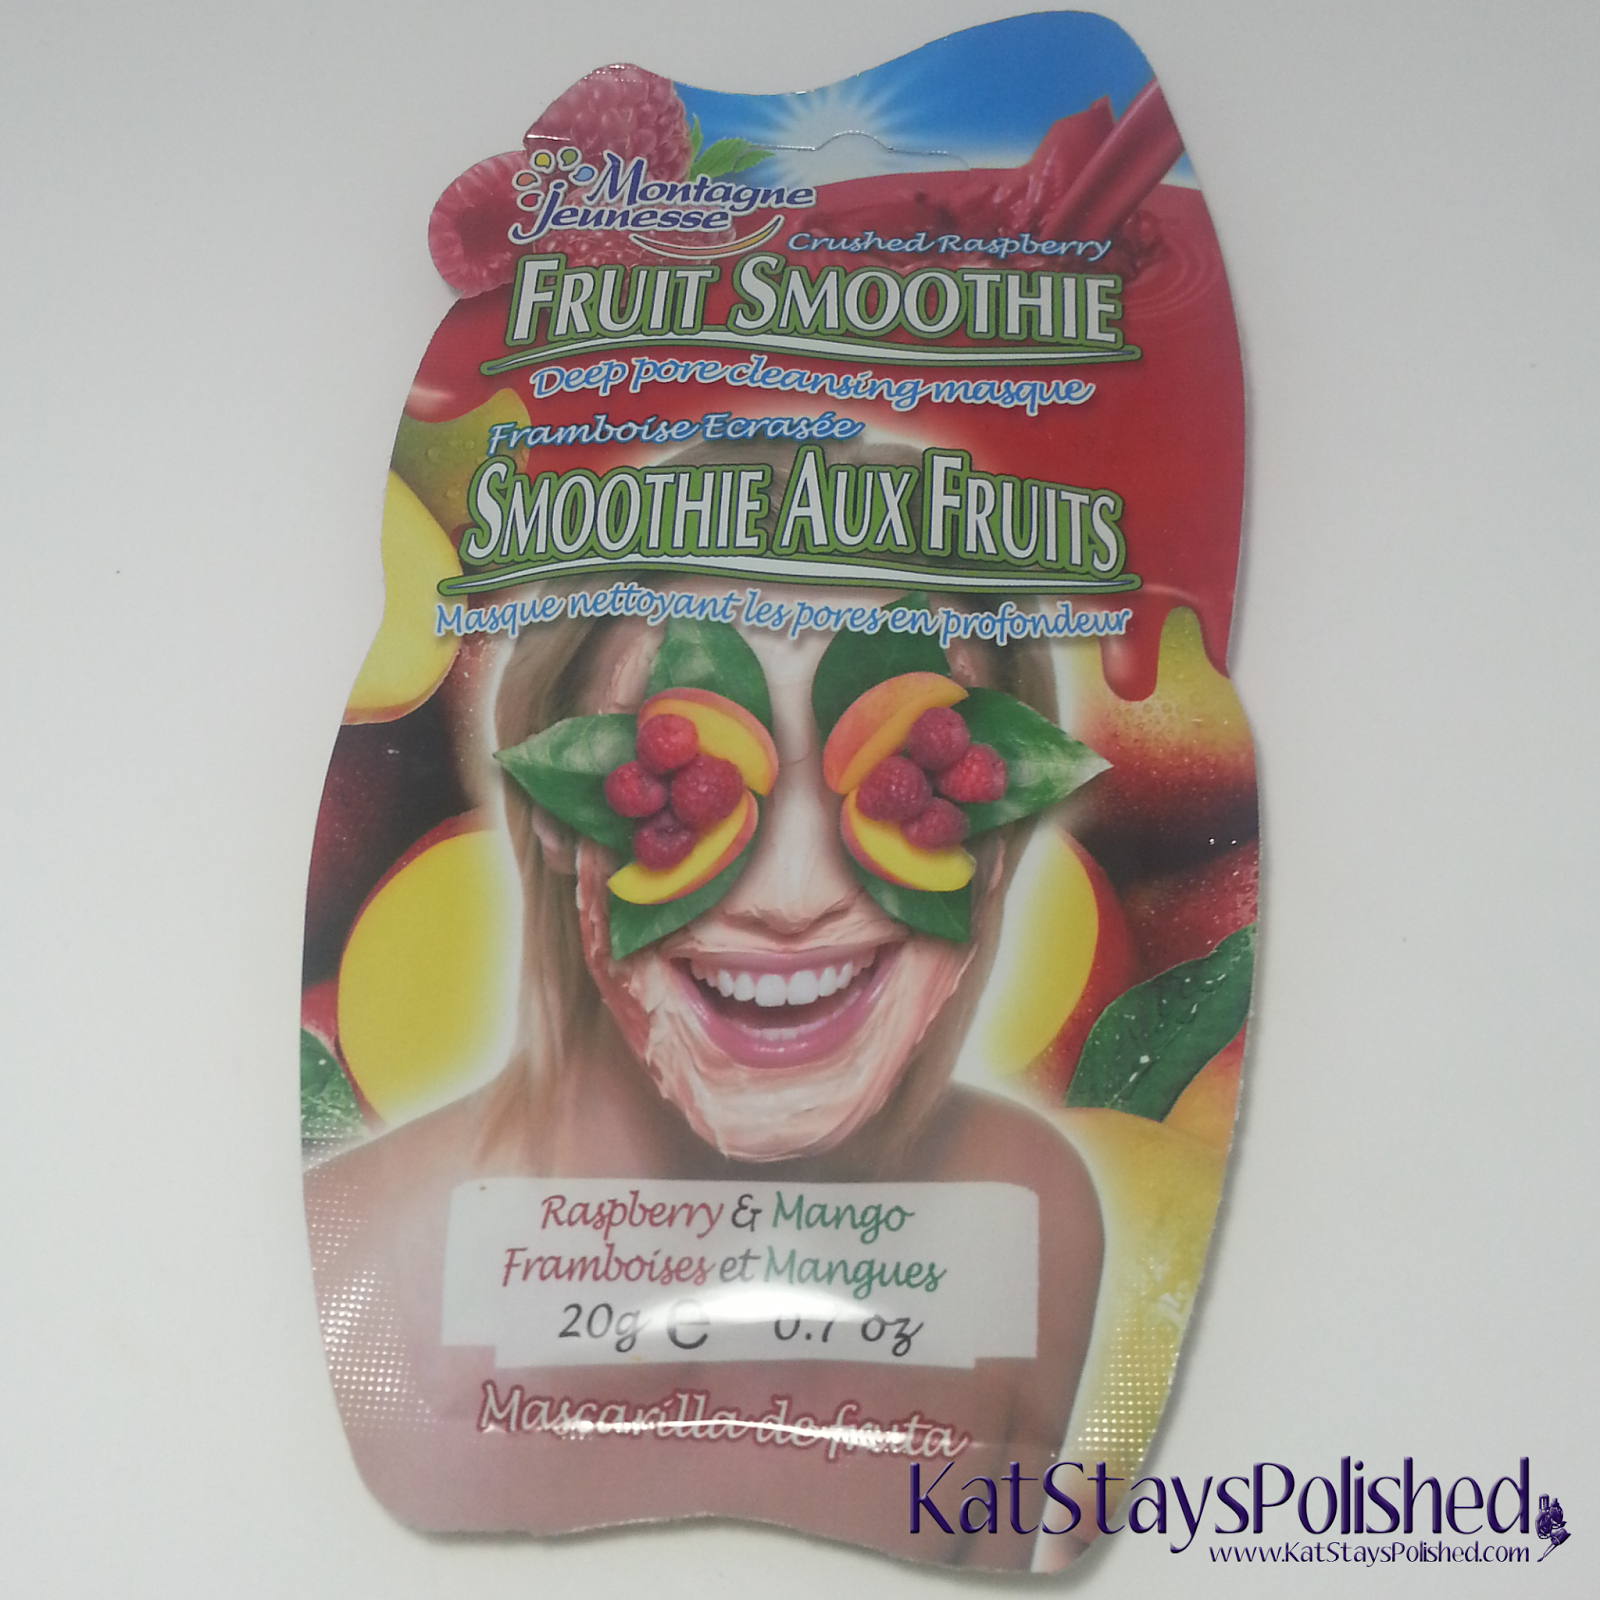 Montagne Jeunesse Face Masks - Fruit Smoothie - Raspberry & Mango | Kat Stays Polished